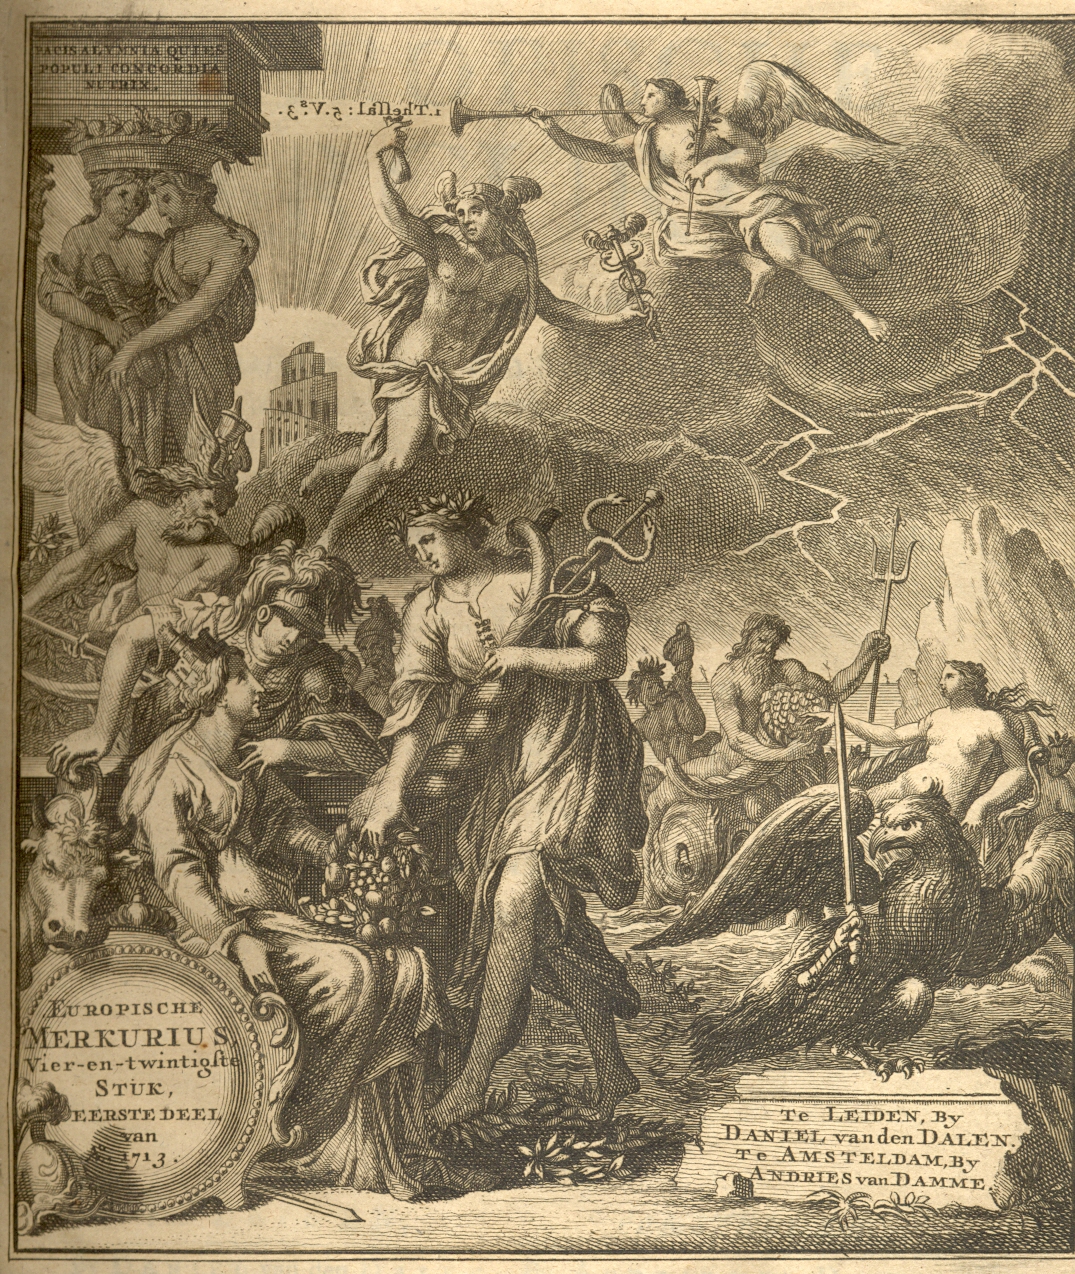 Europische Mercurius, 1713.